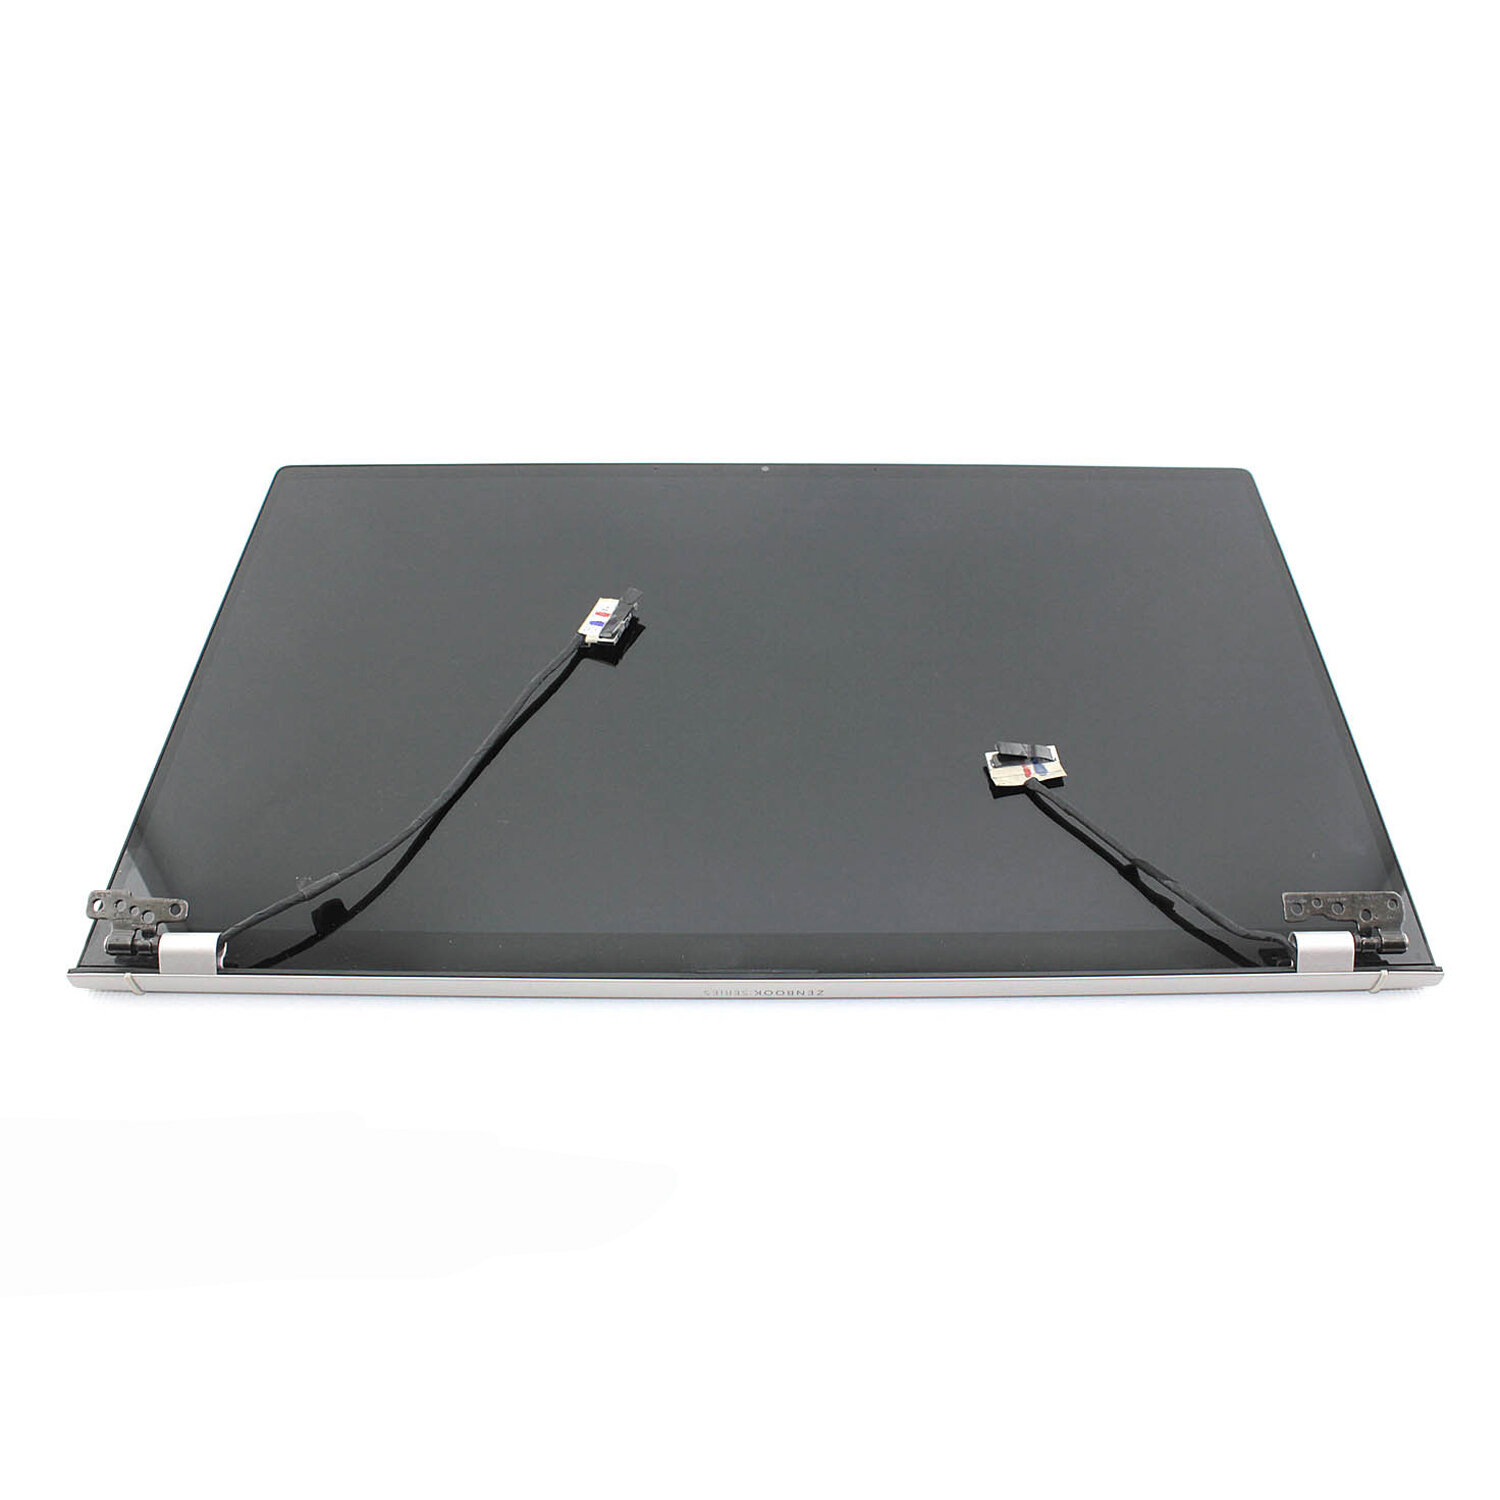 Крышка ноутбука в сборе с матрицей для Asus UX534 серебристая (разрешение Ultra HD) / 3840x2160 (UHD)